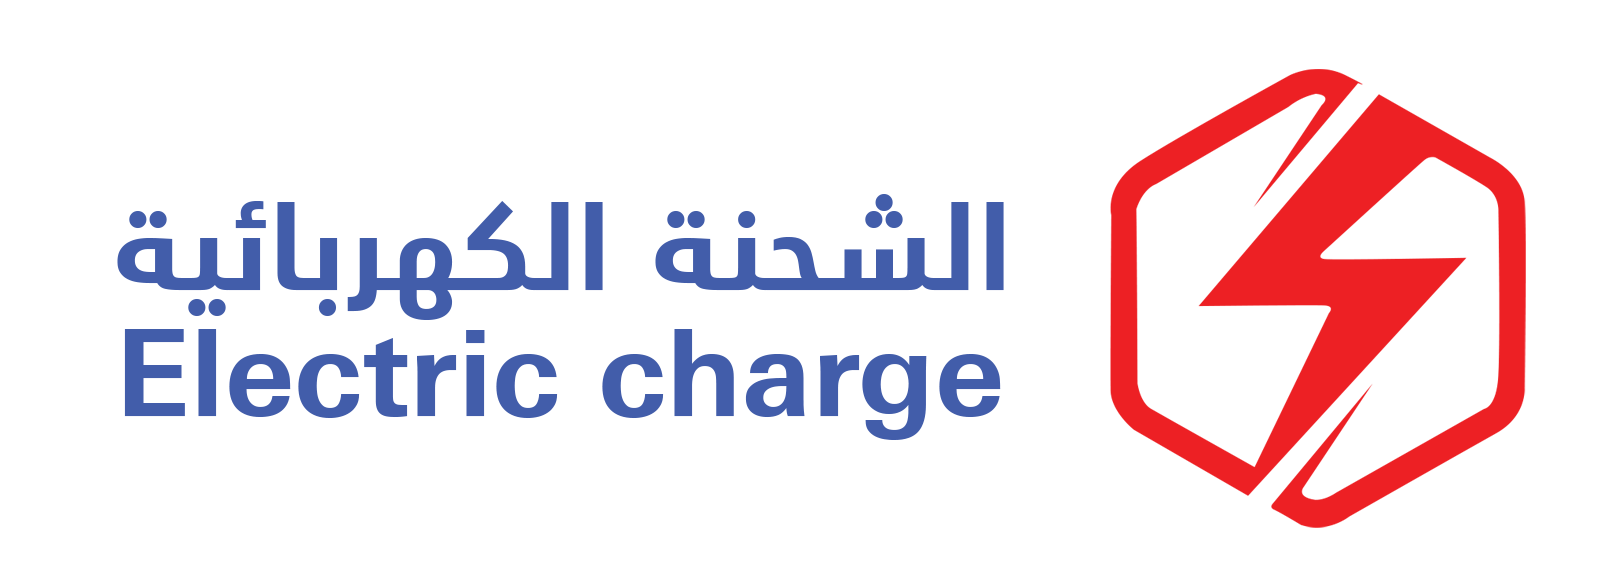 شعار شركة الشحنة الكهربائية للتجارة